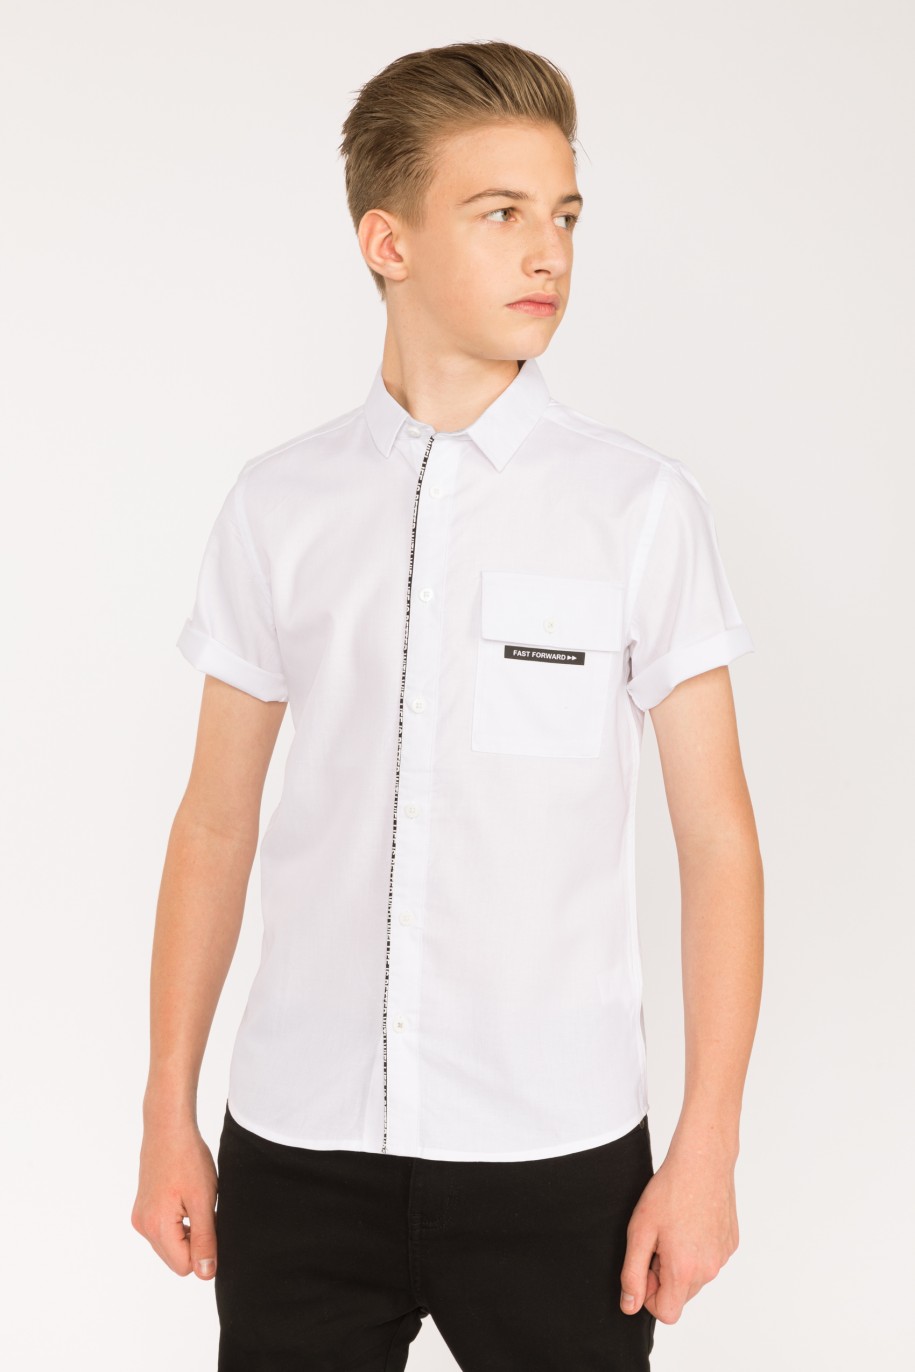 Biała koszula z krótkim rękawem, kieszenią i nadrukiem dla chłopaka - 28434